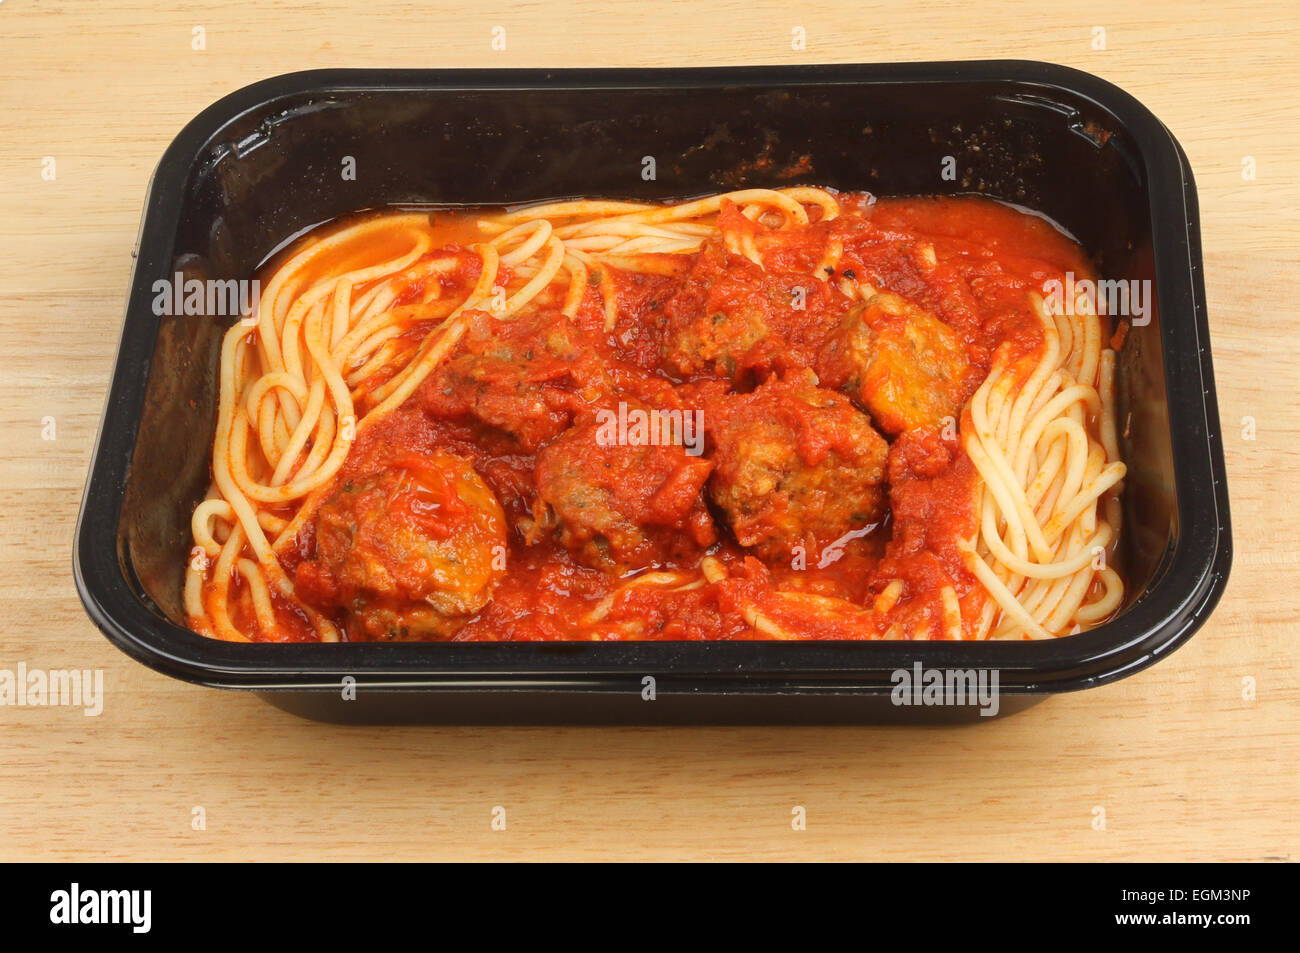 Spaghetti und Fleischbällchen in einem Kunststoff Karton auf einem Holzbrett Stockfoto